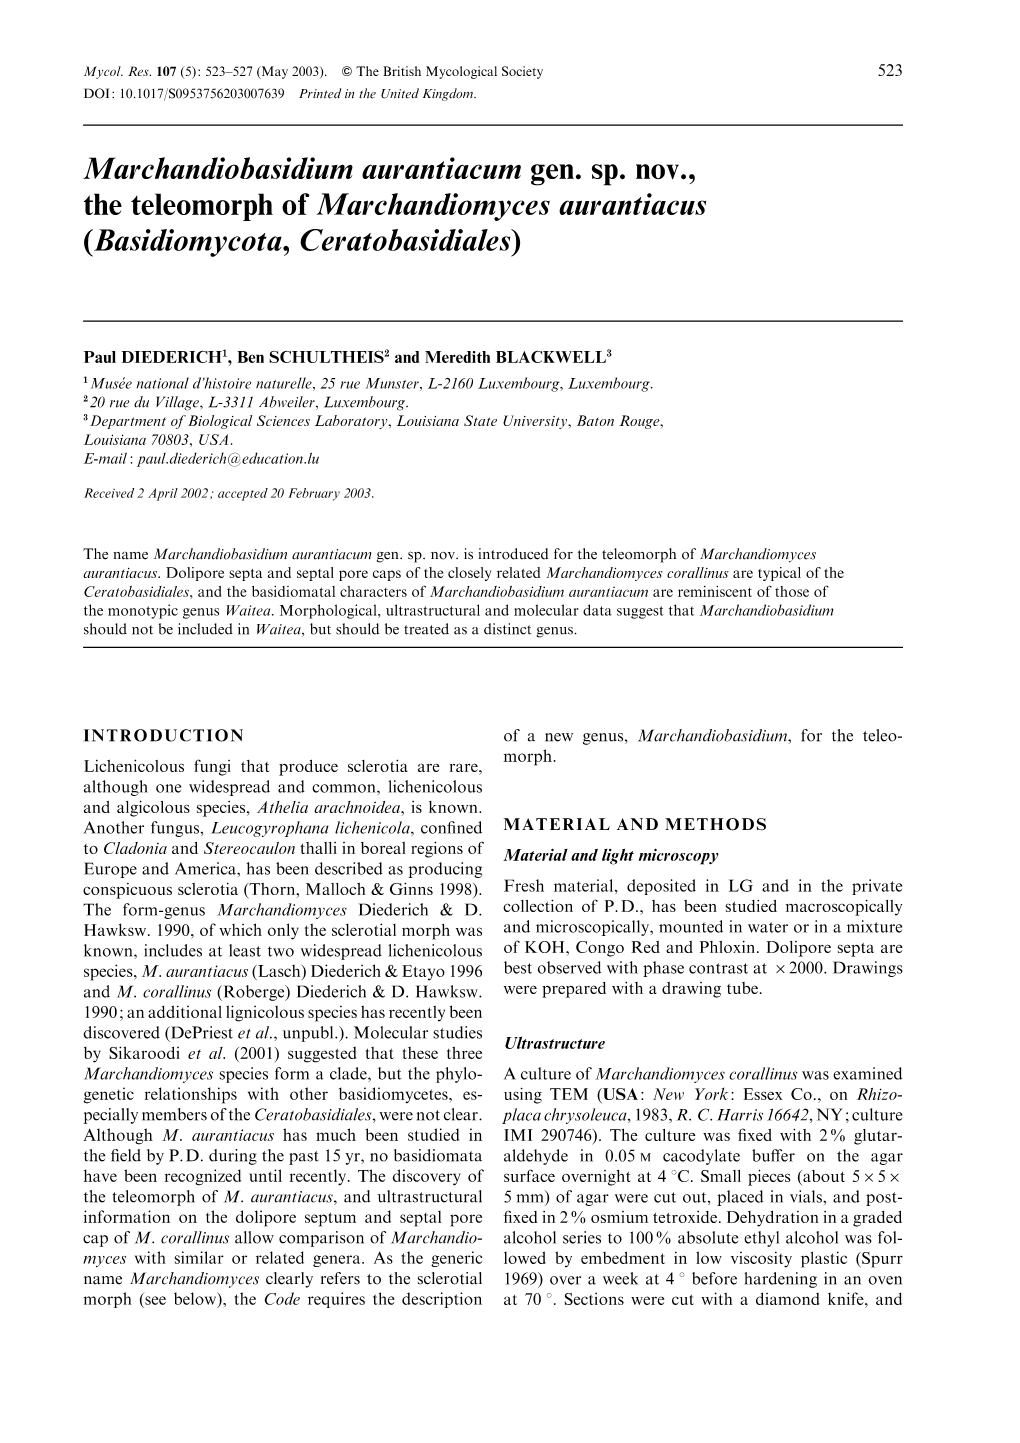 Marchandiobasidium Aurantiacum Gen. Sp. Nov., the Teleomorph of Marchandiomyces Aurantiacus (Basidiomycota, Ceratobasidiales)